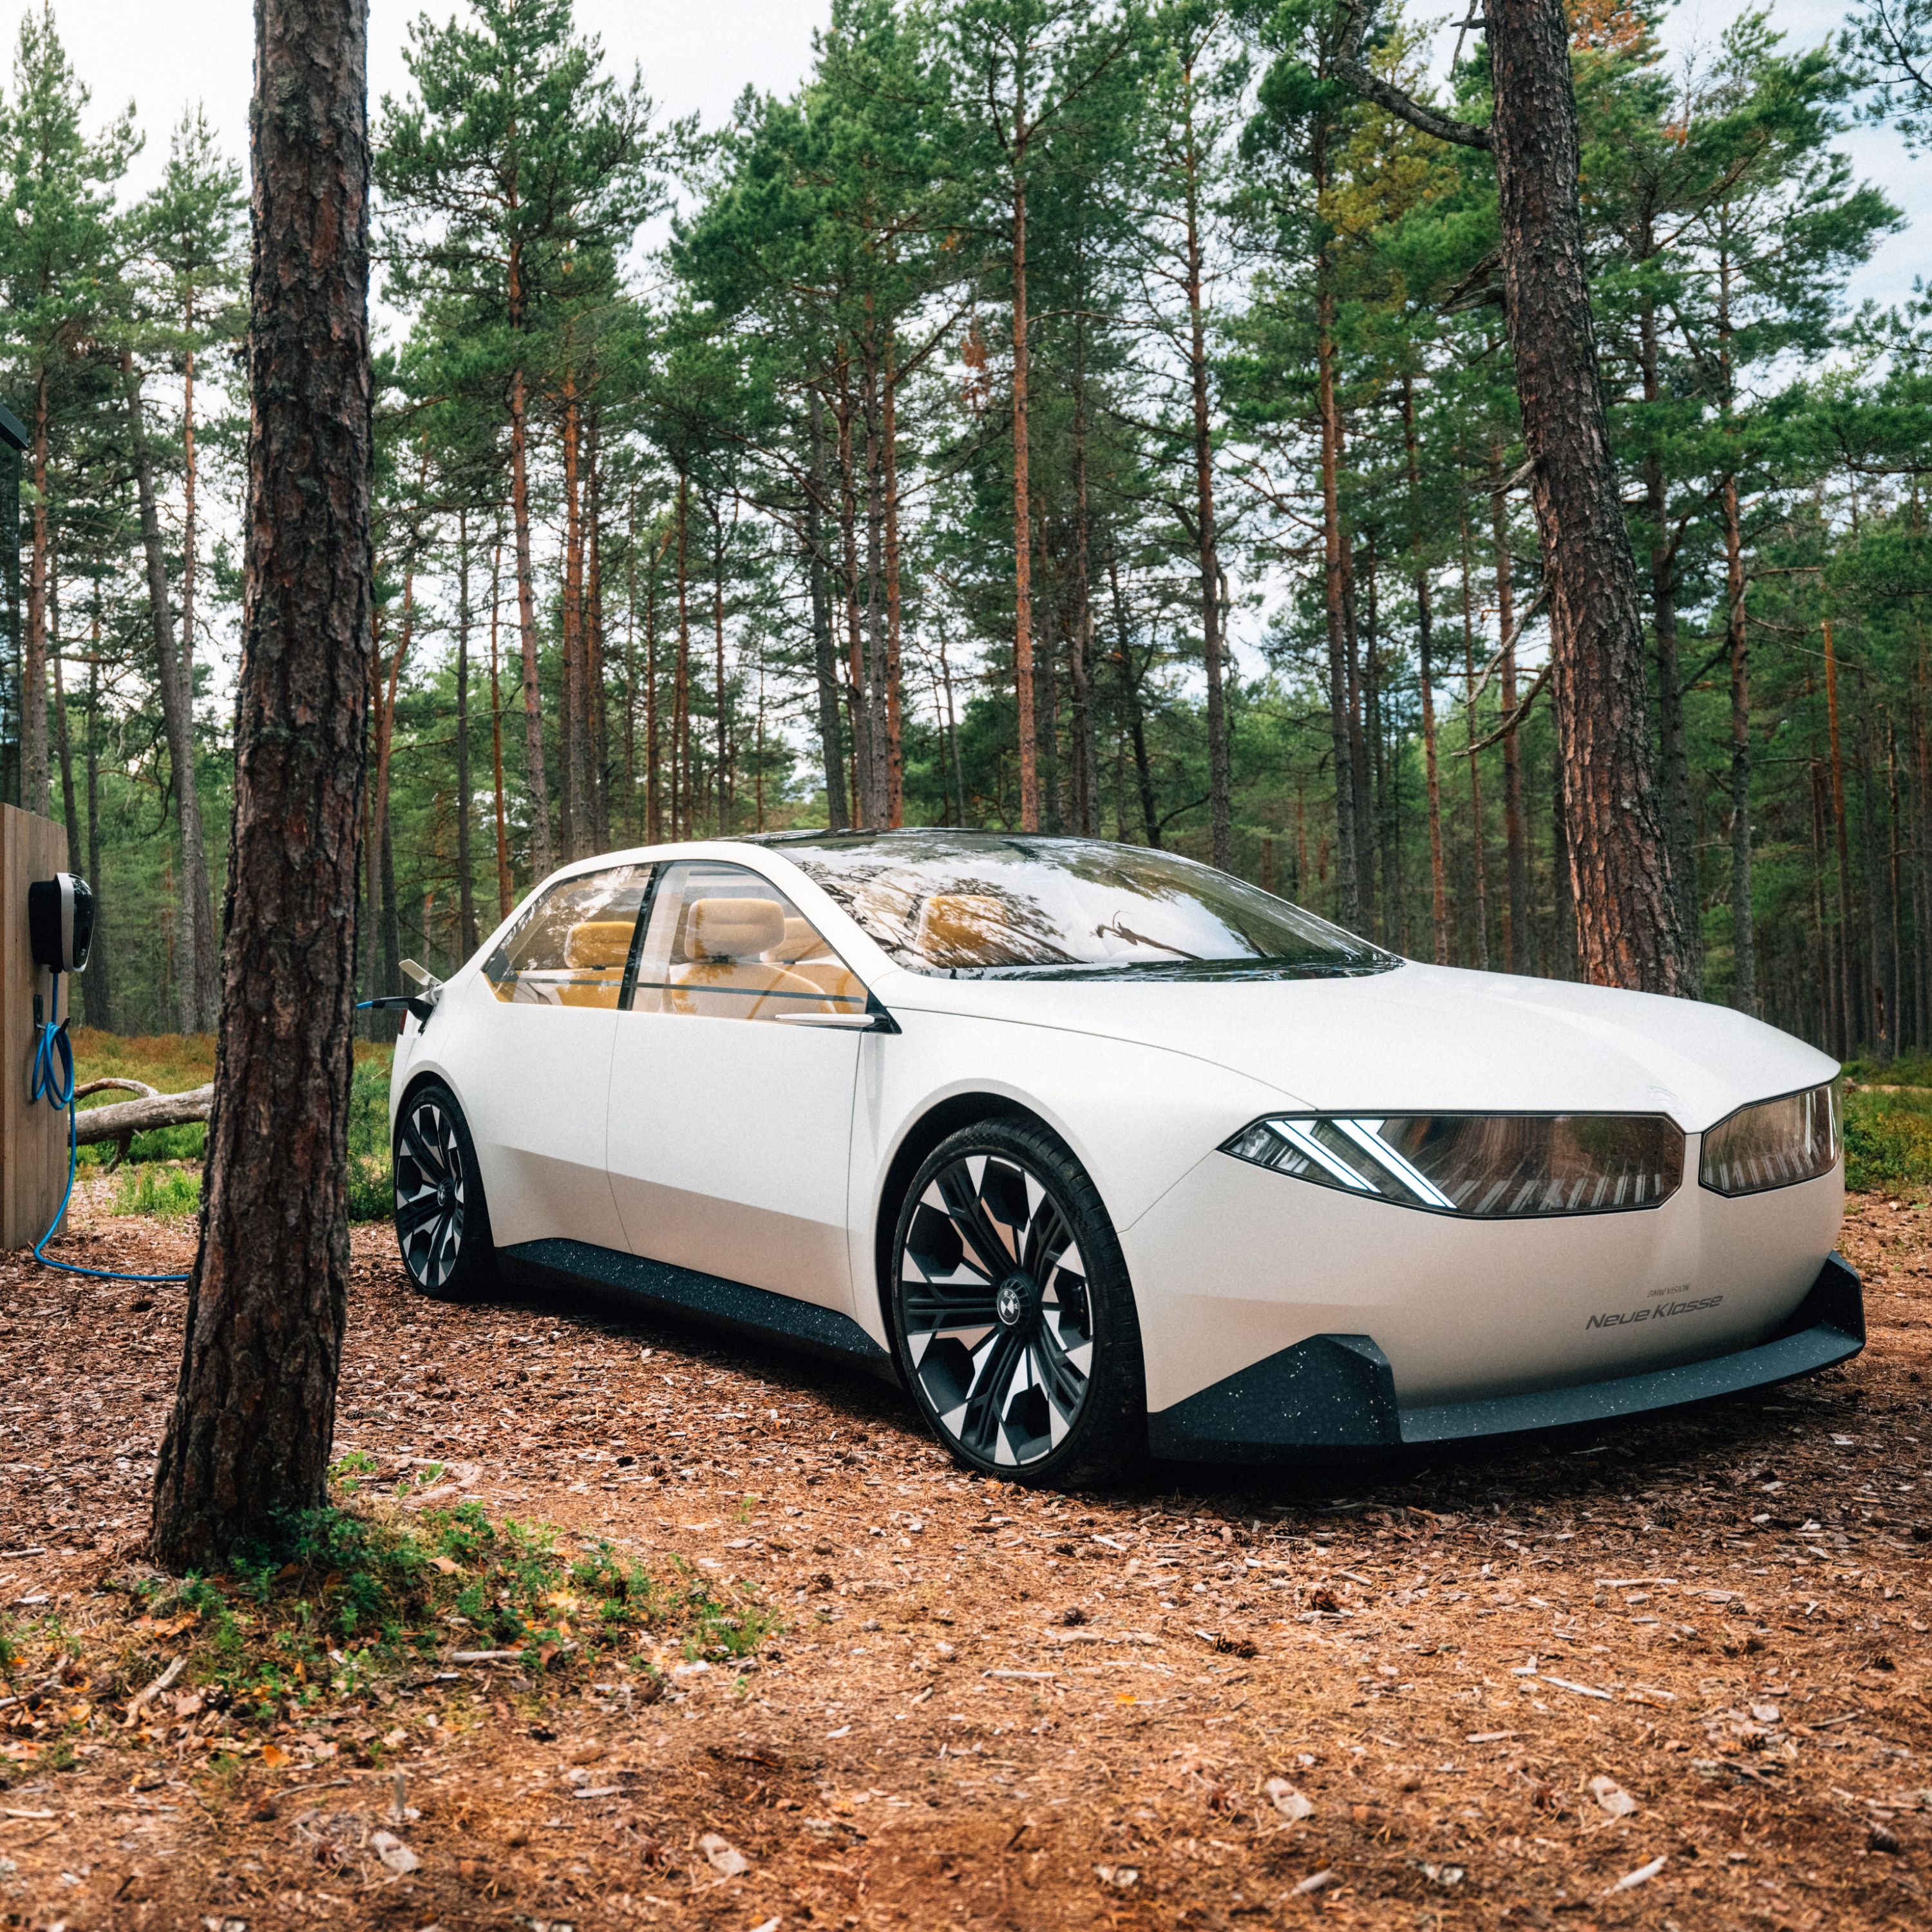 BMW Vision Neue Klasse มุมมอง 2/3 รถยนต์ต้นแบบปี 2023 รูปโฉมตัวรถภายนอก มุมมองด้านข้างแบบ 2/3 ขณะขับขี่อยู่ในป่า